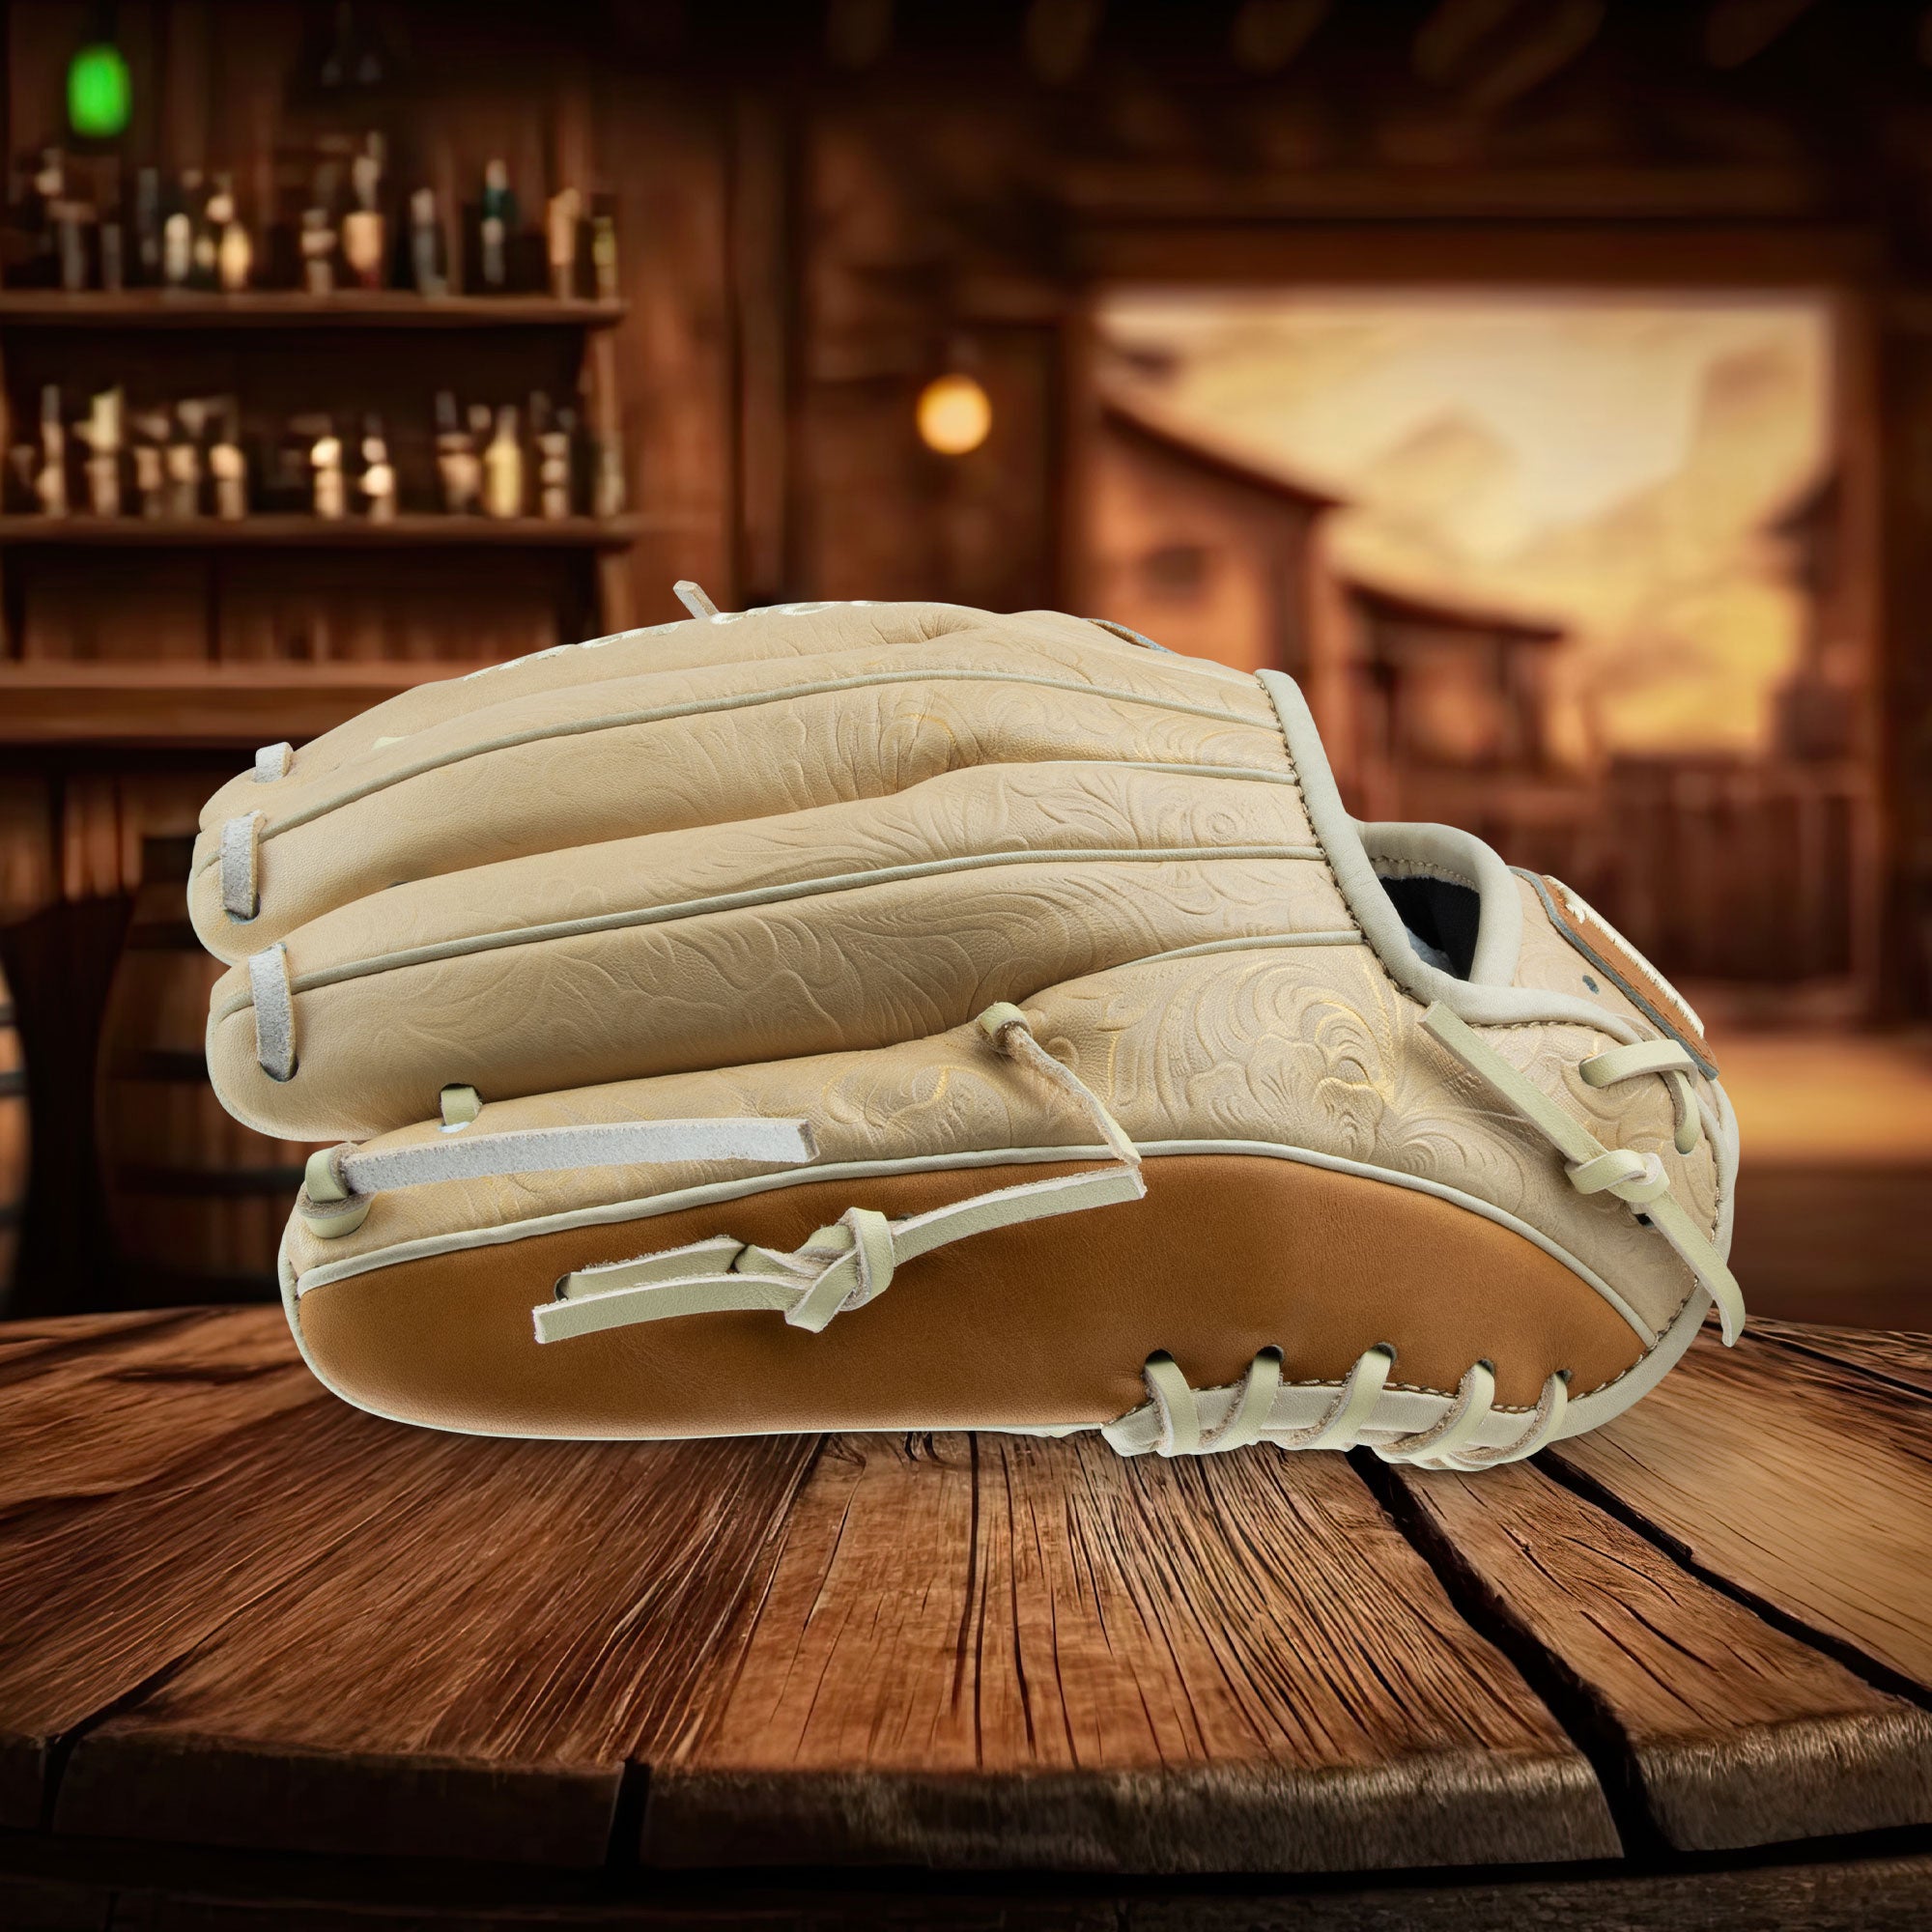 Marucci NightShift WESTERN SADDLE 11.75 Baseball Glove: MFGNTSHFT-0203